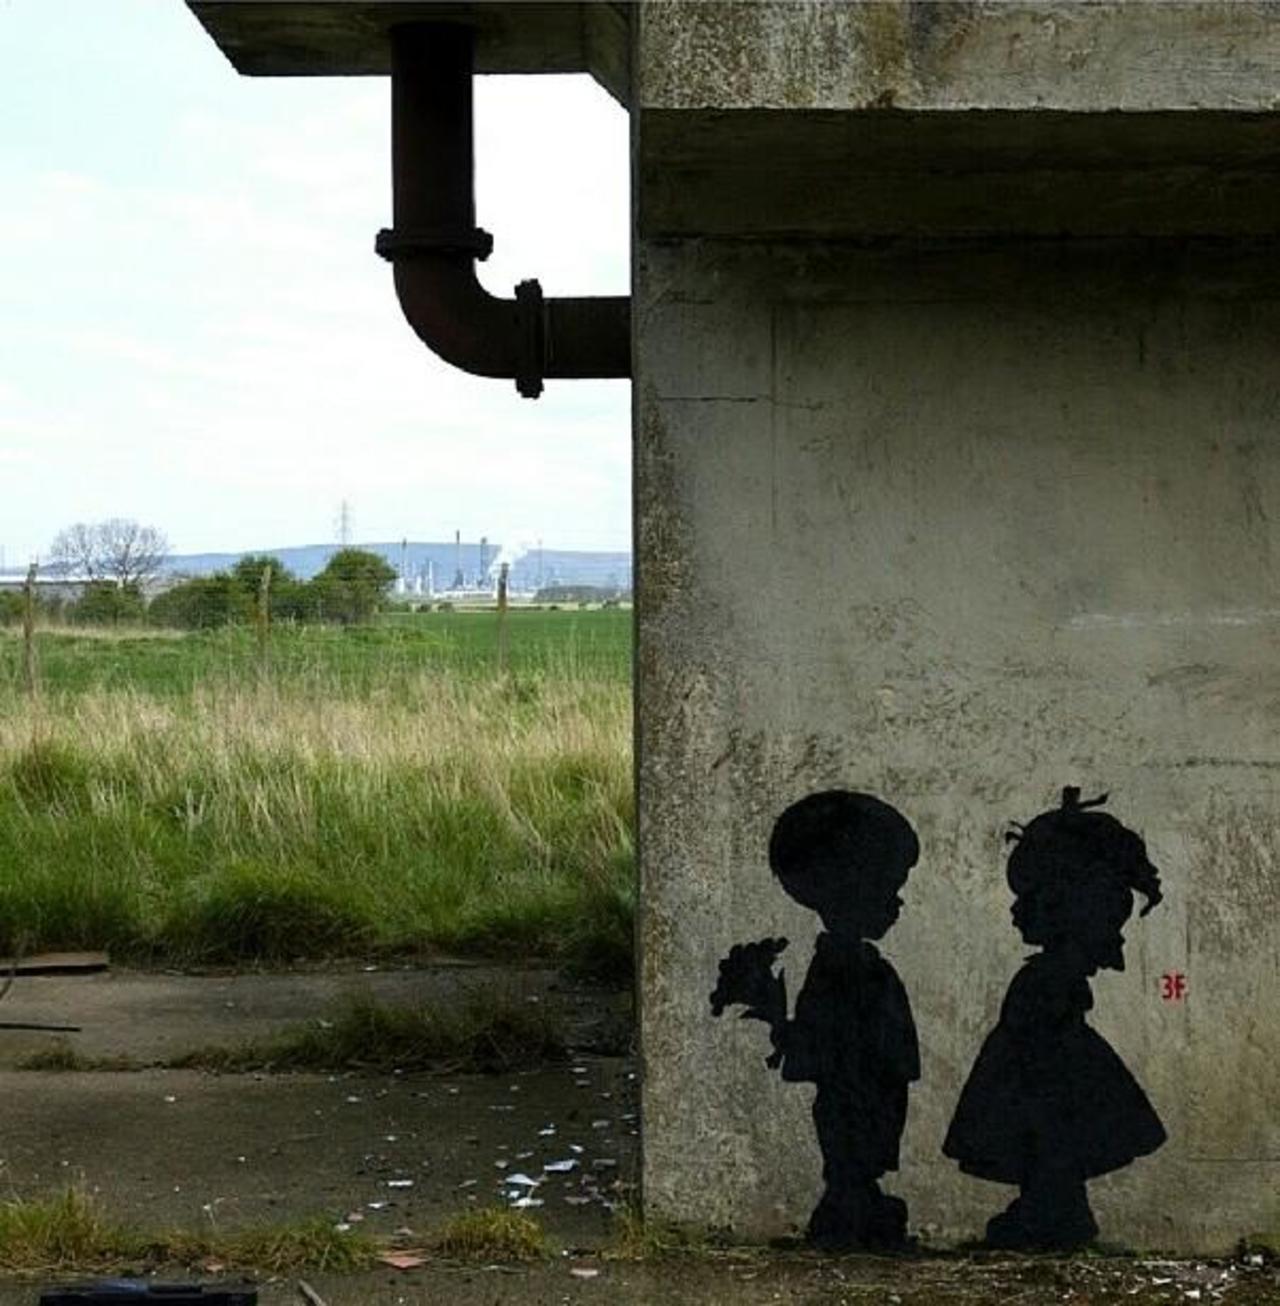 Found love in a hopeless place!

Street Art by 3fountains 

#art #mural #graffiti #streetart http://t.co/XNdSzfZAEe